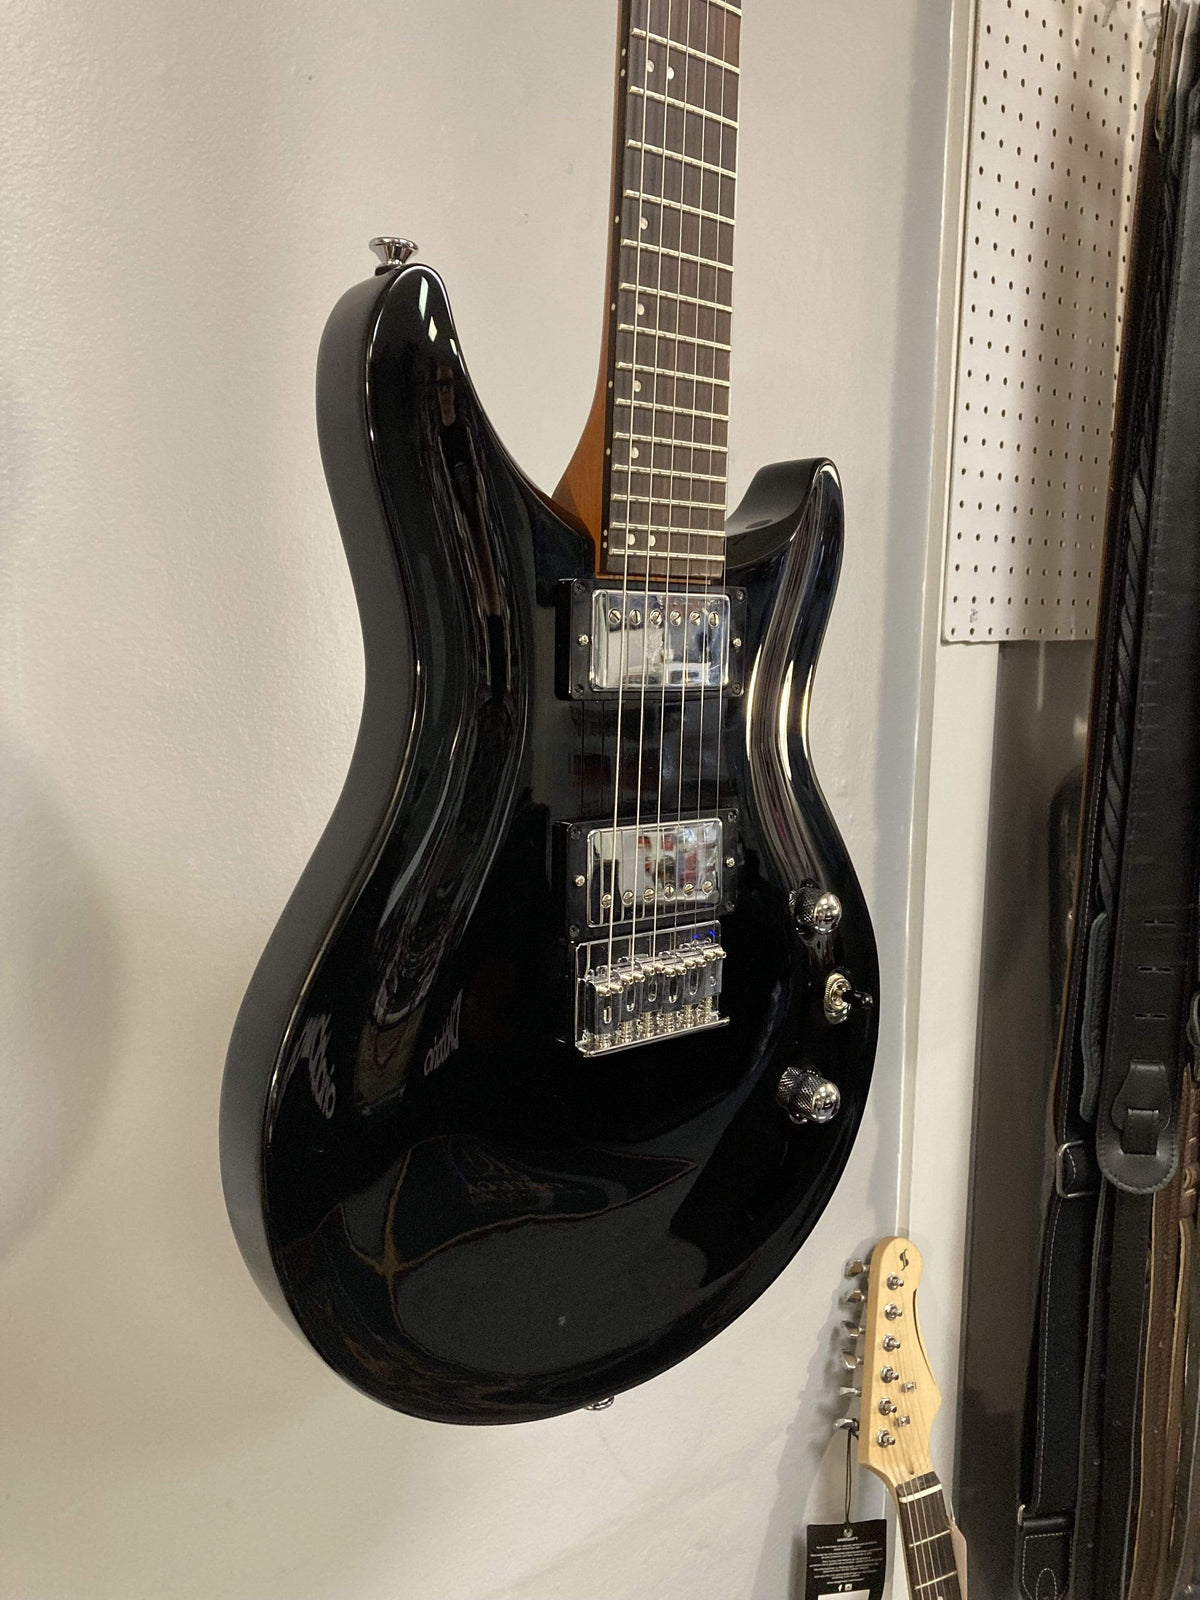 Samick SS-200 Electric Guitar Guitars on Main